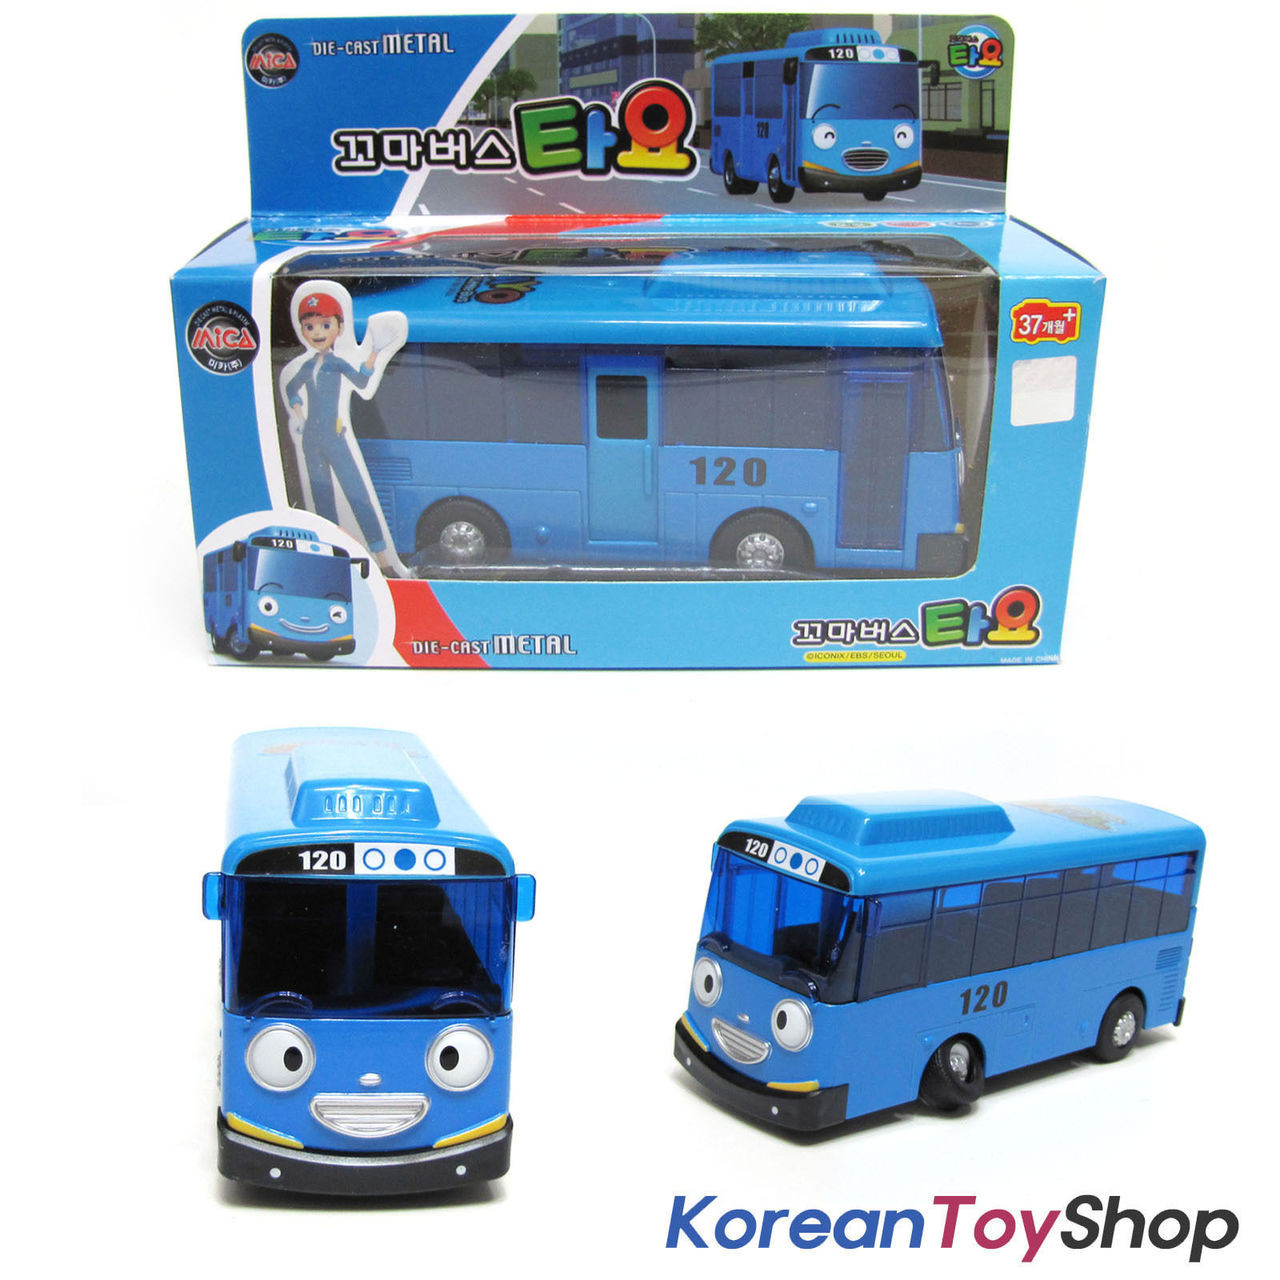 diecast bus toy